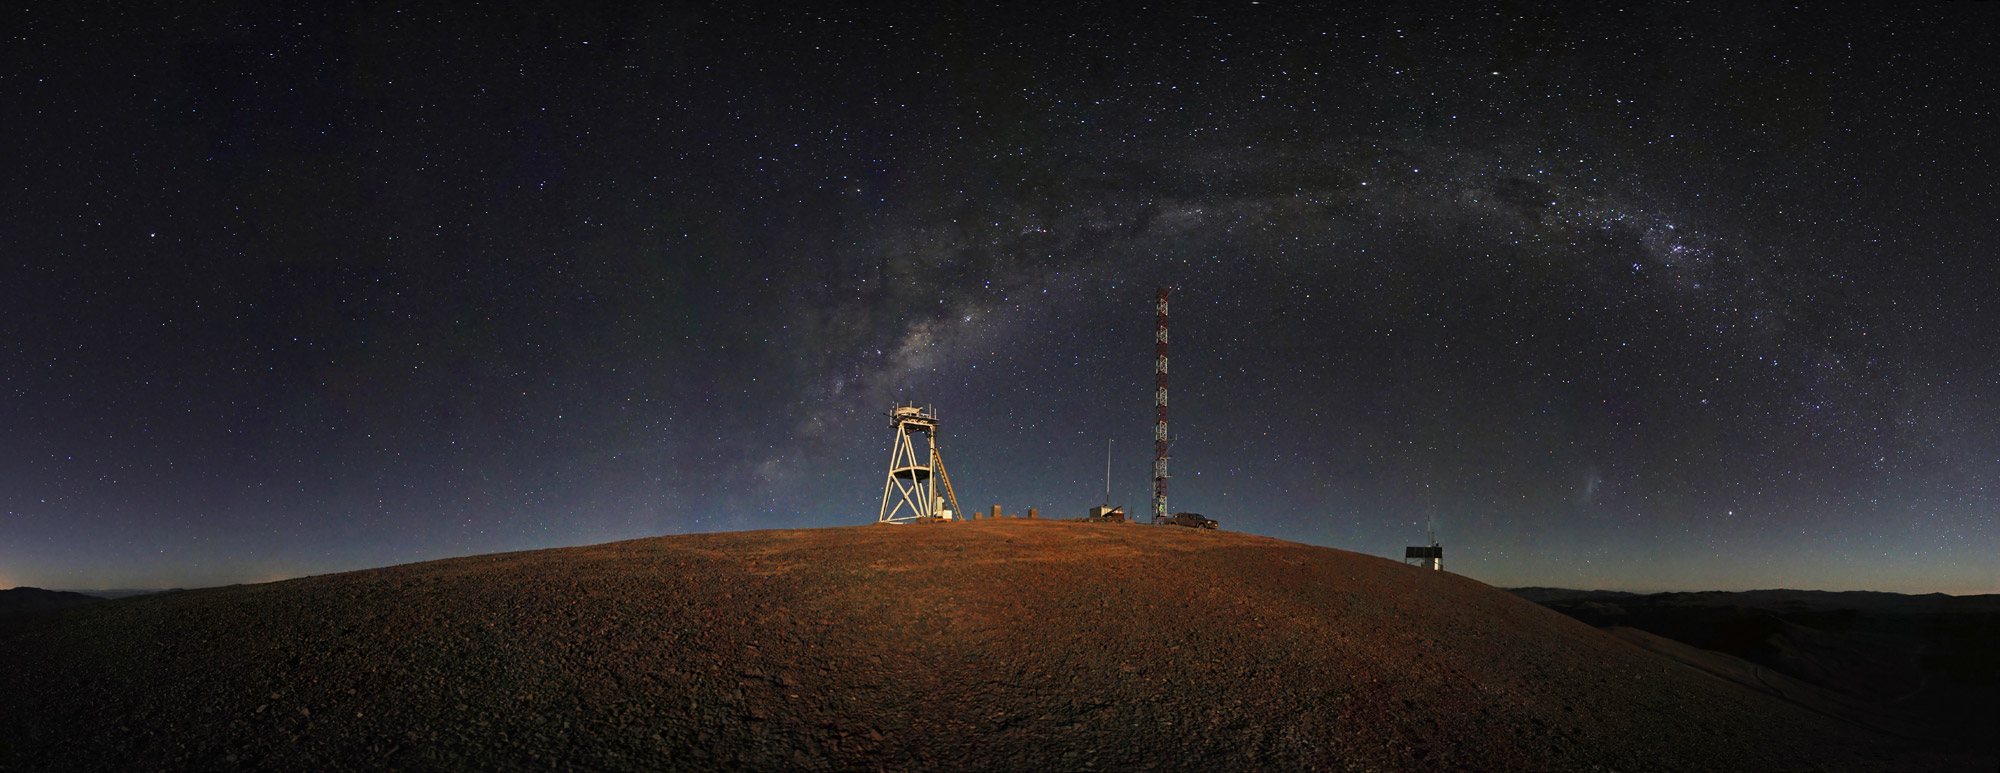 Le site chilien de Cerro Armazones où sera construit le télescope géant de 42 mètres de l'ESO. Crédits ESO/S. Brunier